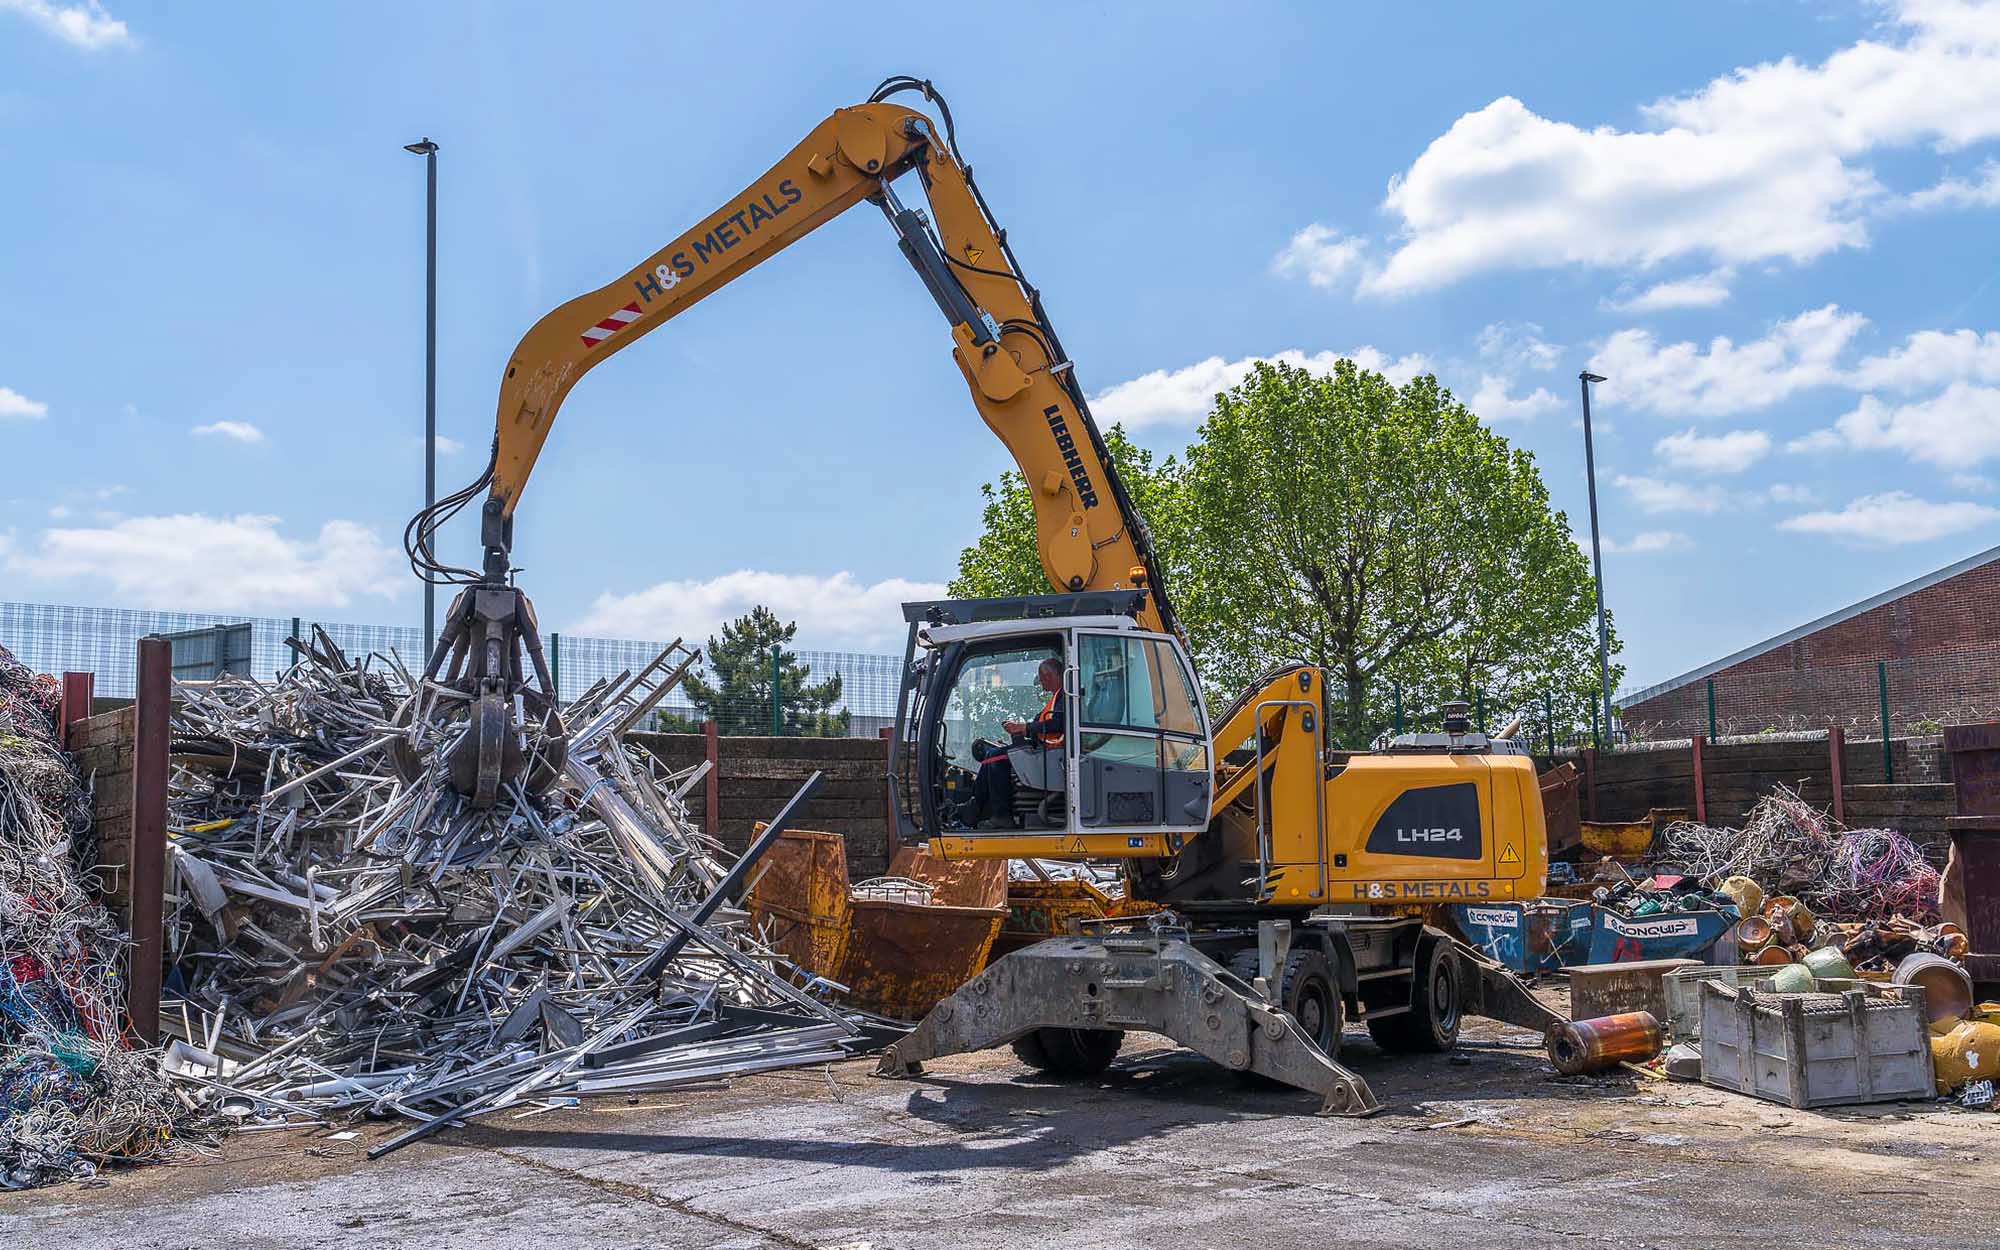 Portsmouth metals scrap yard